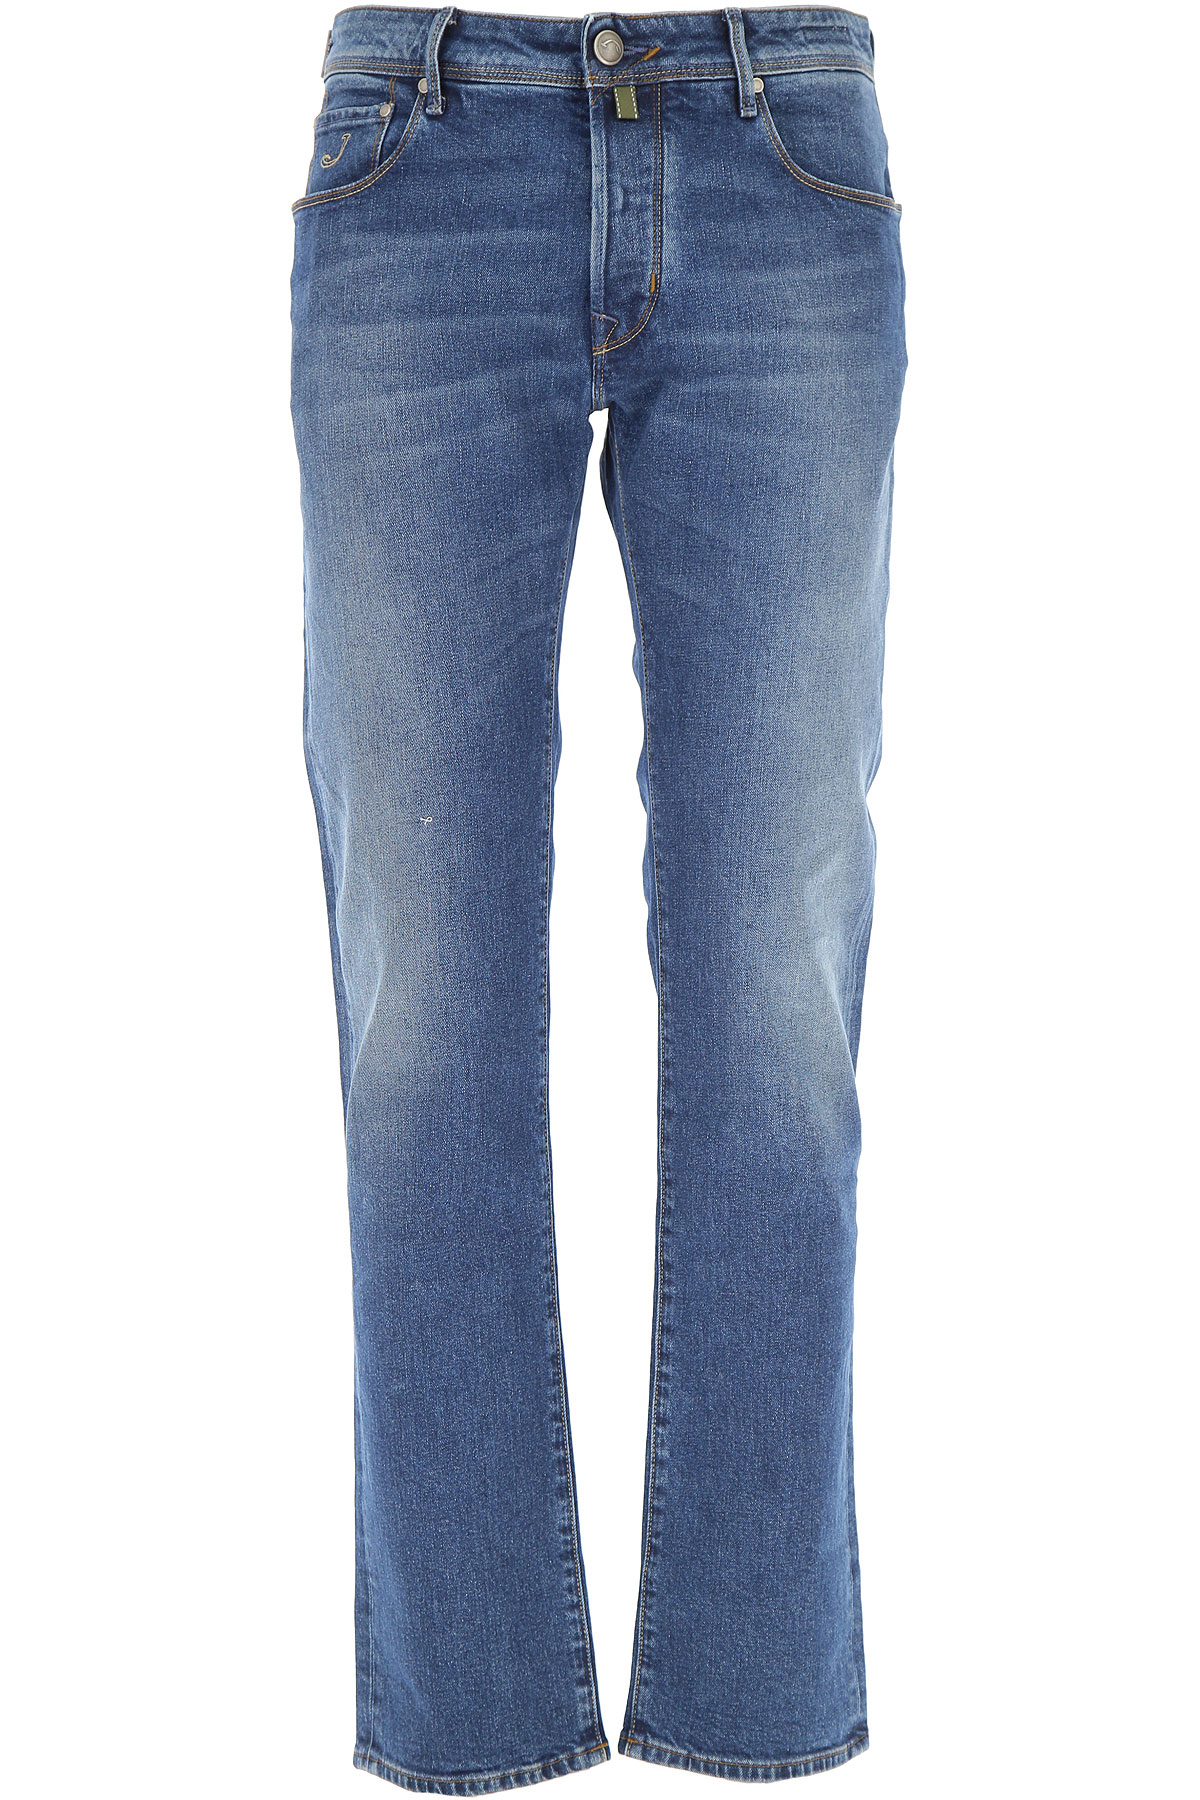 Jacob Cohen Jeans, Bluejeans, Denim Jeans für Herren Günstig im Sale, Medium Denim Blau, Baumwolle, 2017, 46 48 49 50 52 54